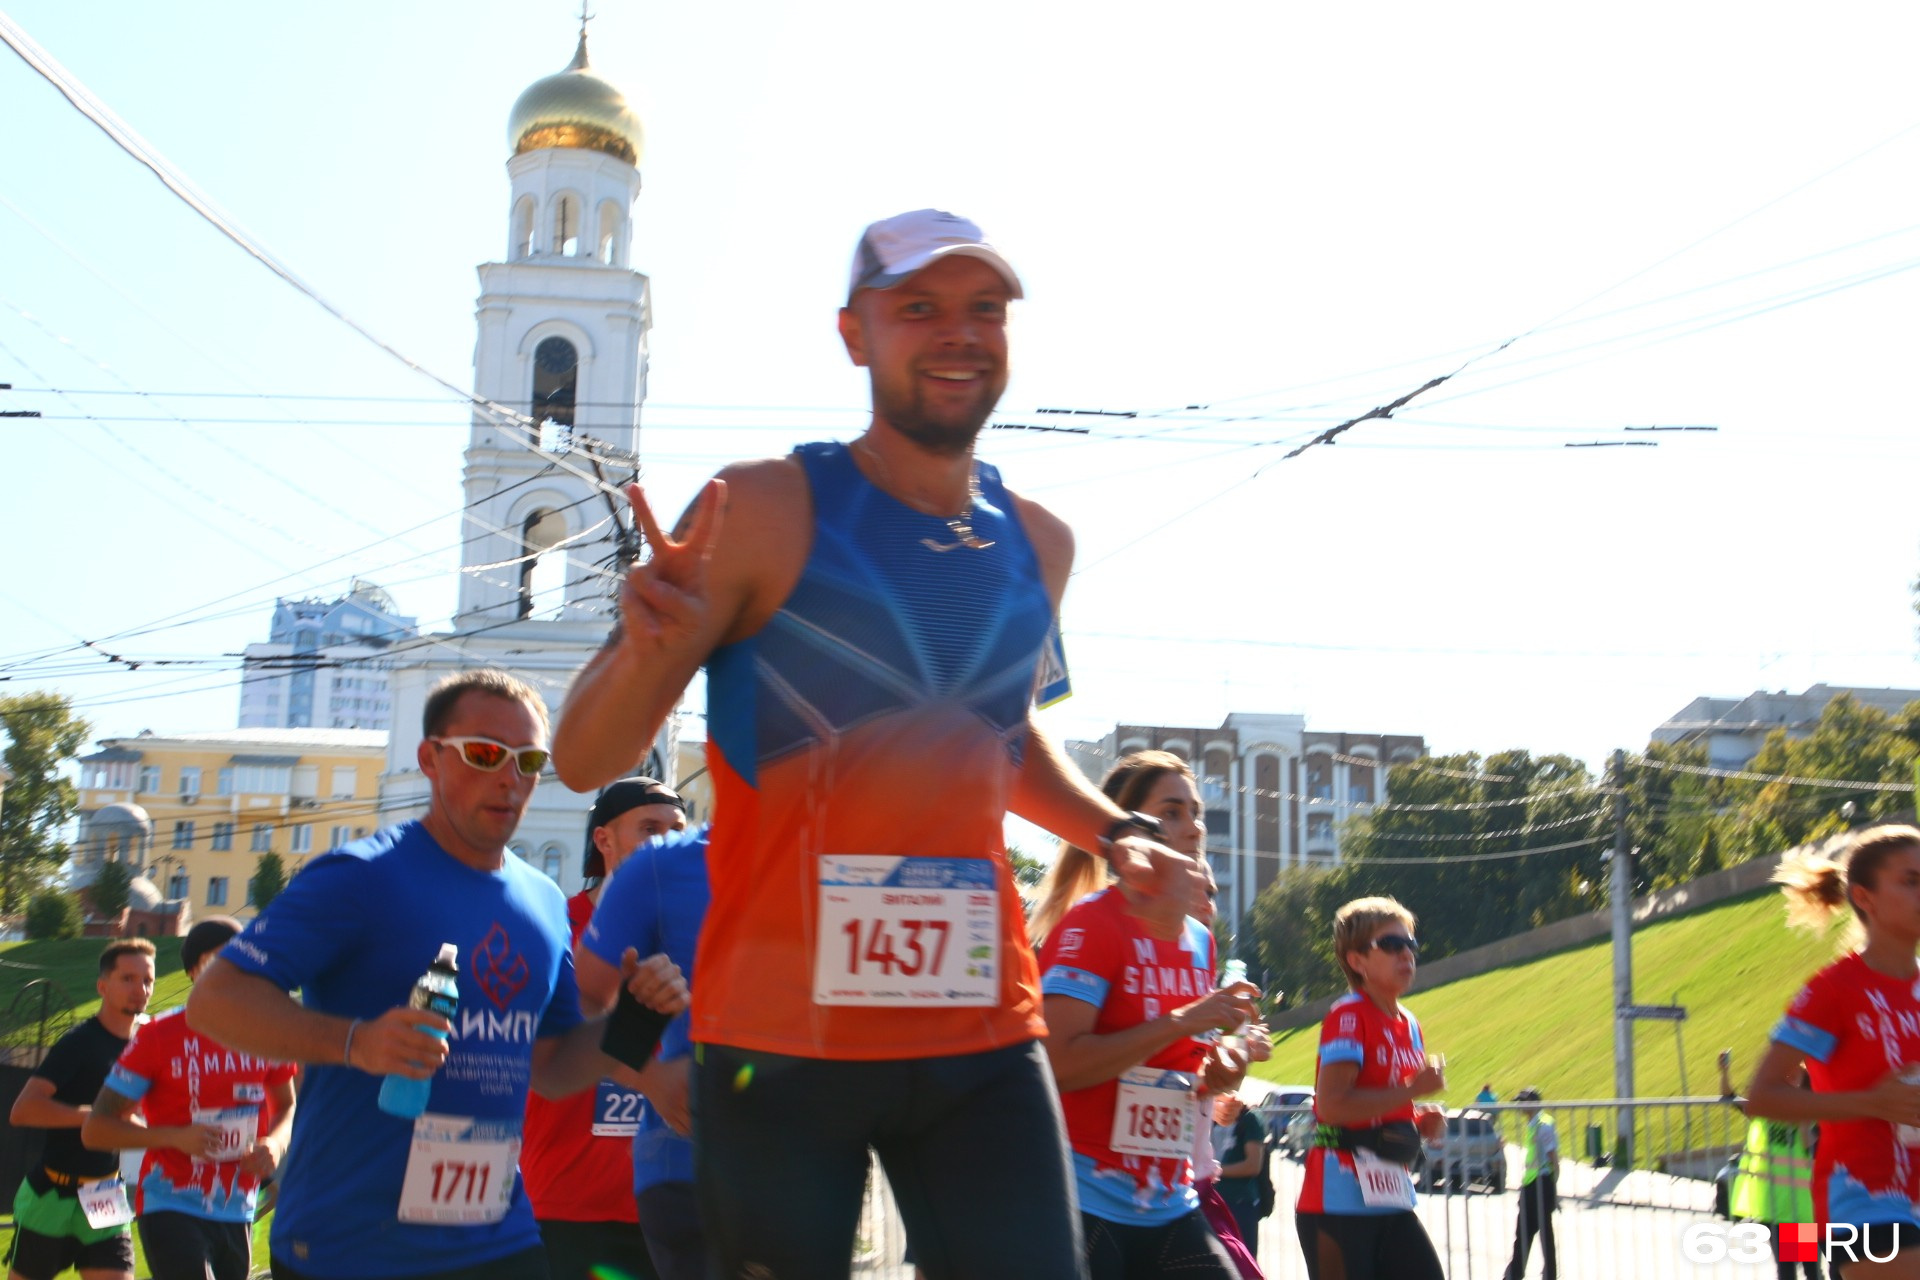 Спортсмен 25 лет. Первый Самарский марафон 2017 года.